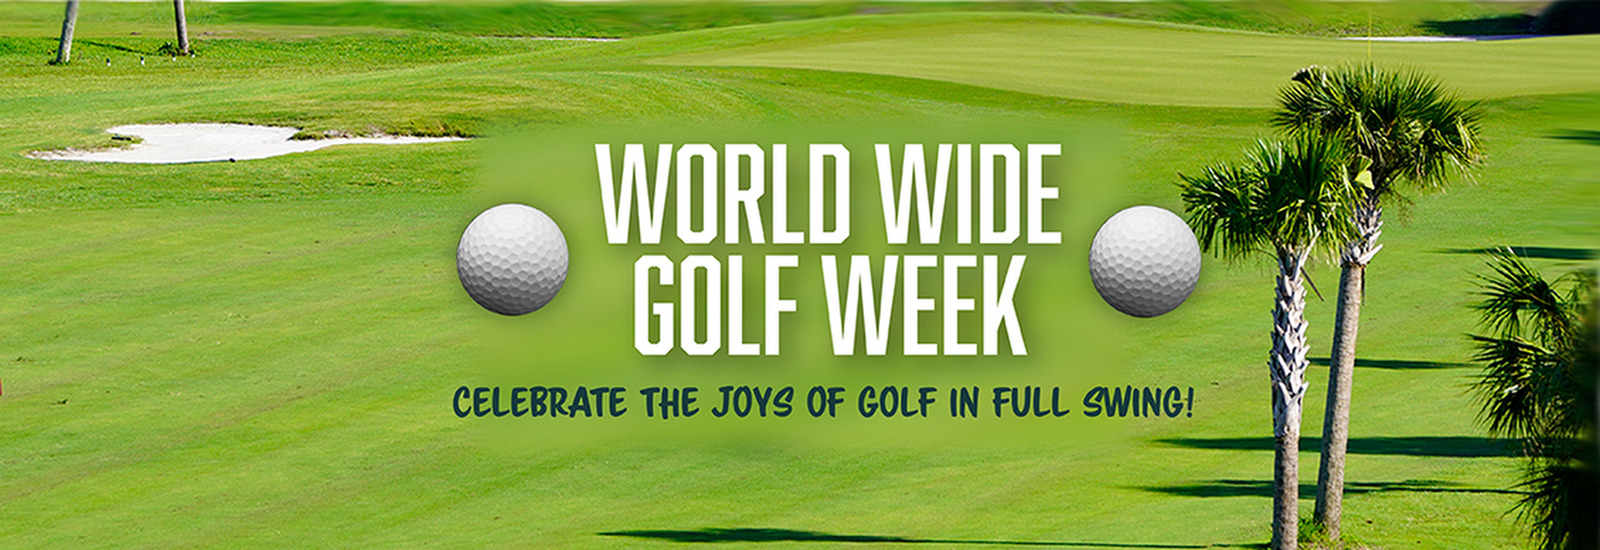 World Wide Golf Week